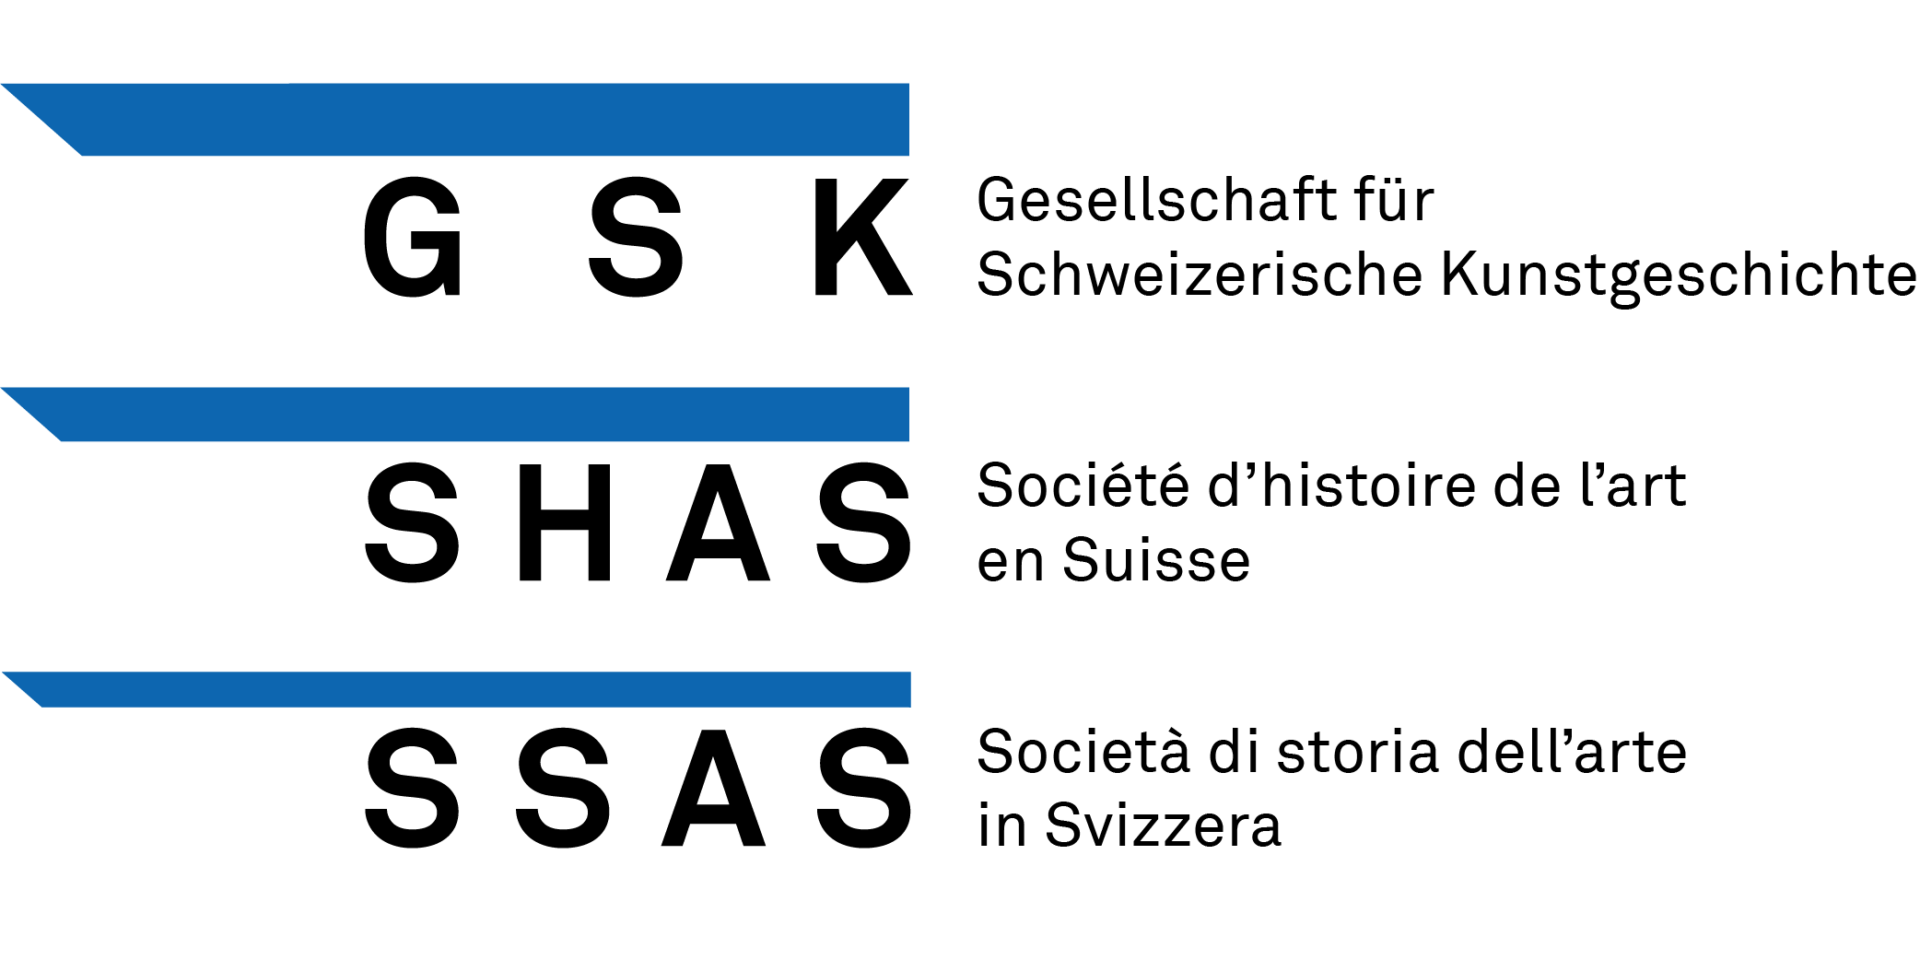 Gesellschaft für Schweizerische Kunstgeschichte